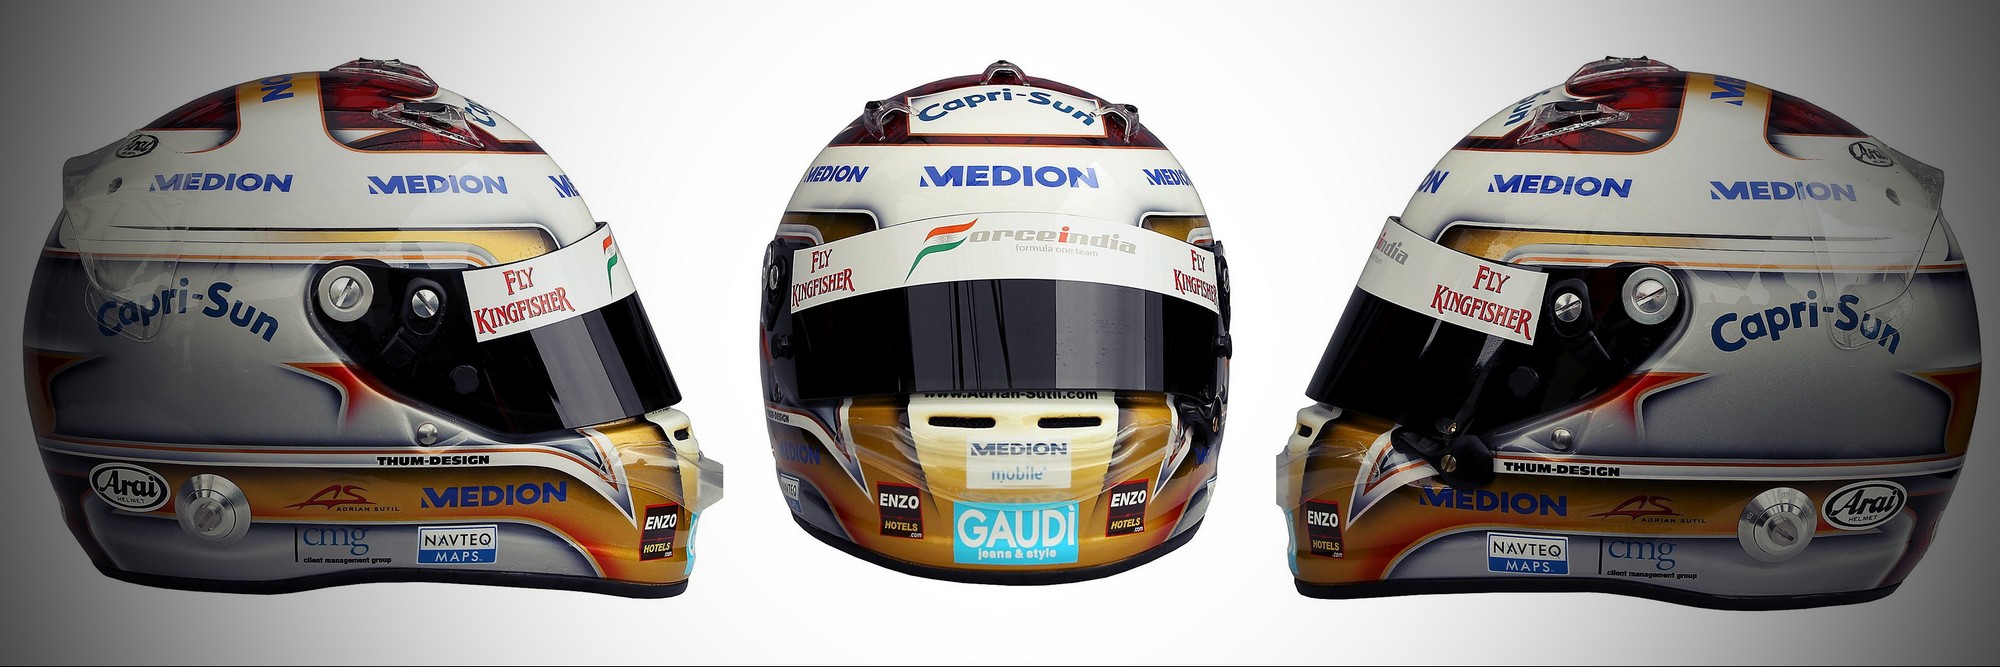 Шлем Адриана Сутиля на сезон 2011 года | 2011 helmet of Adrian Sutil